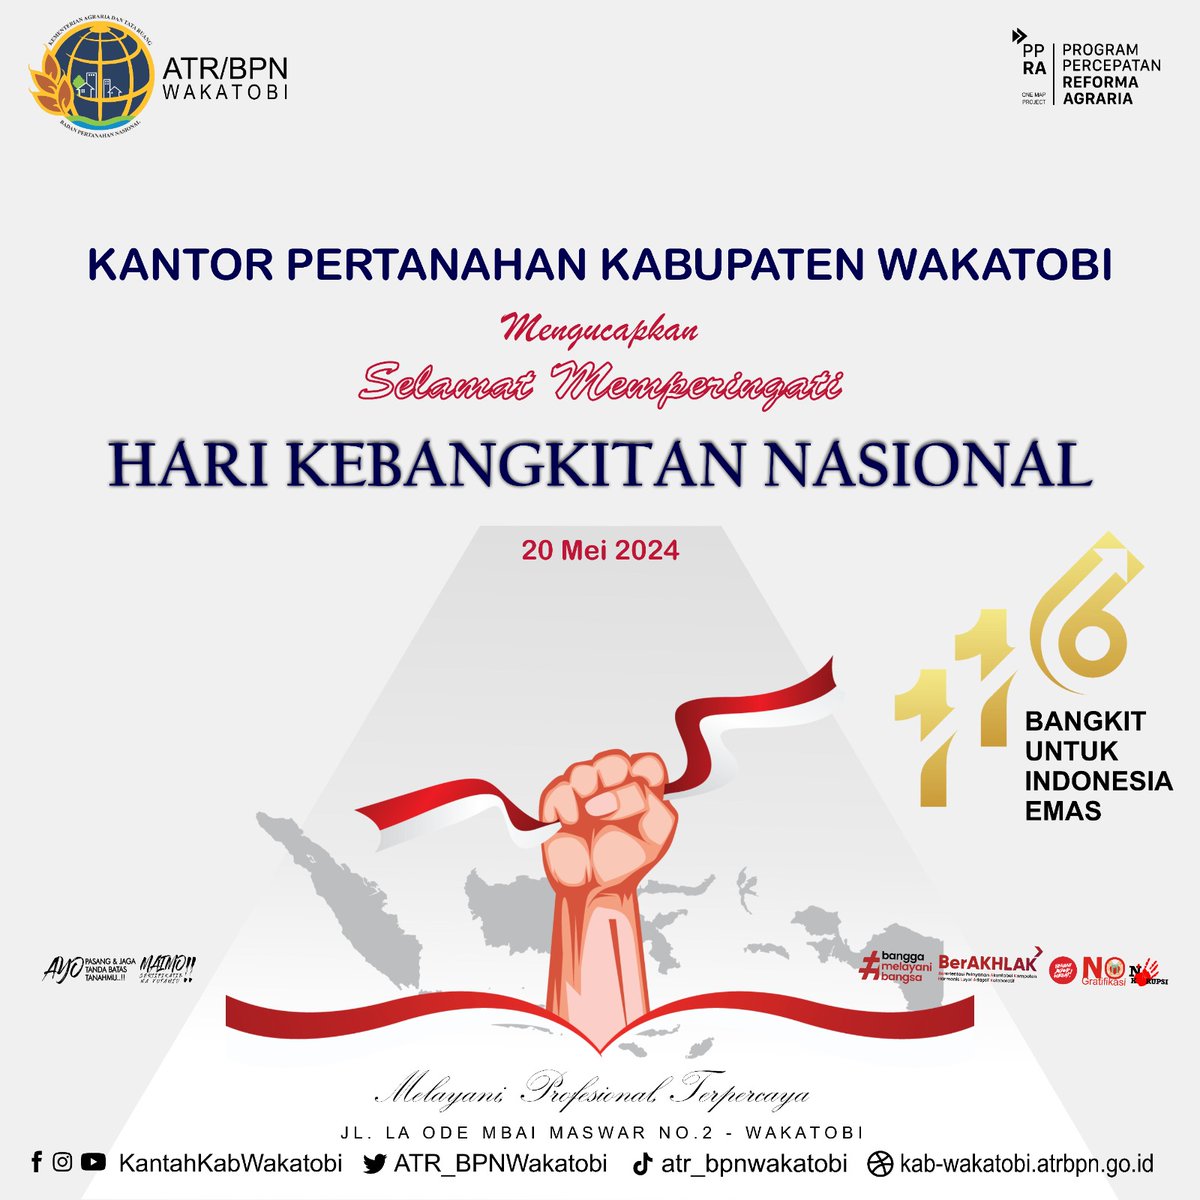 Halo #SobATRBPN Wakatobi, 

Seluruh jajaran Kantor Pertanahan Kabupaten Wakatobi mengucapkan selamat memperingati Hari Kebangkitan Nasional. Bangkit Untuk Indonesia Emas.